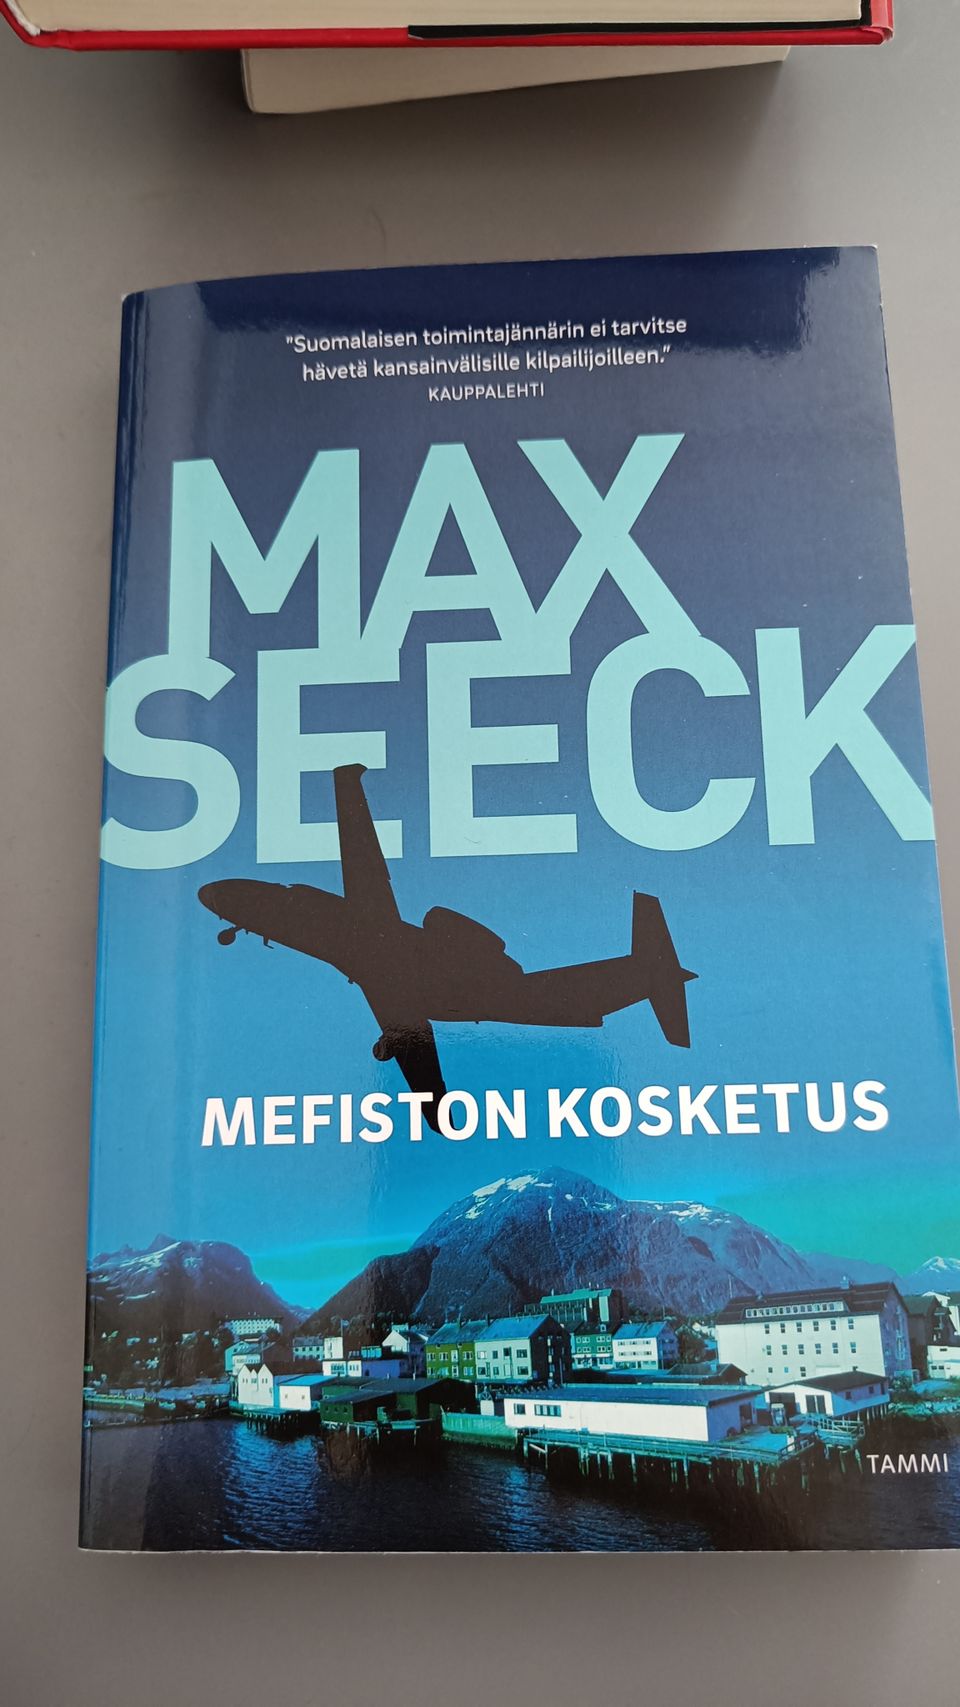 Mefiston kosketus - Max Seeck